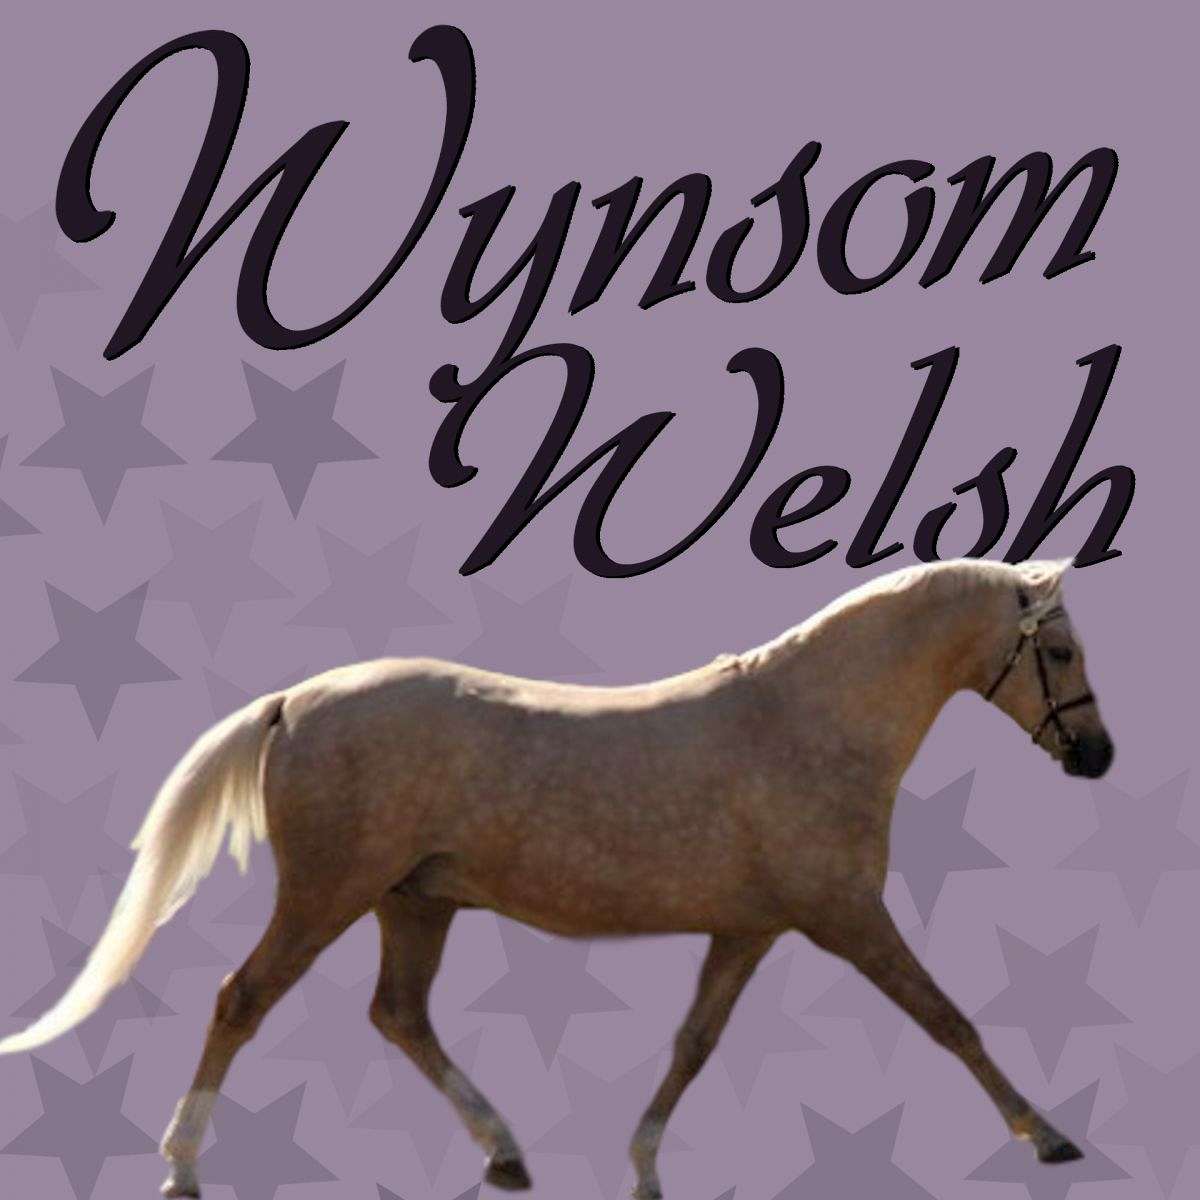 Wynsom Welsh